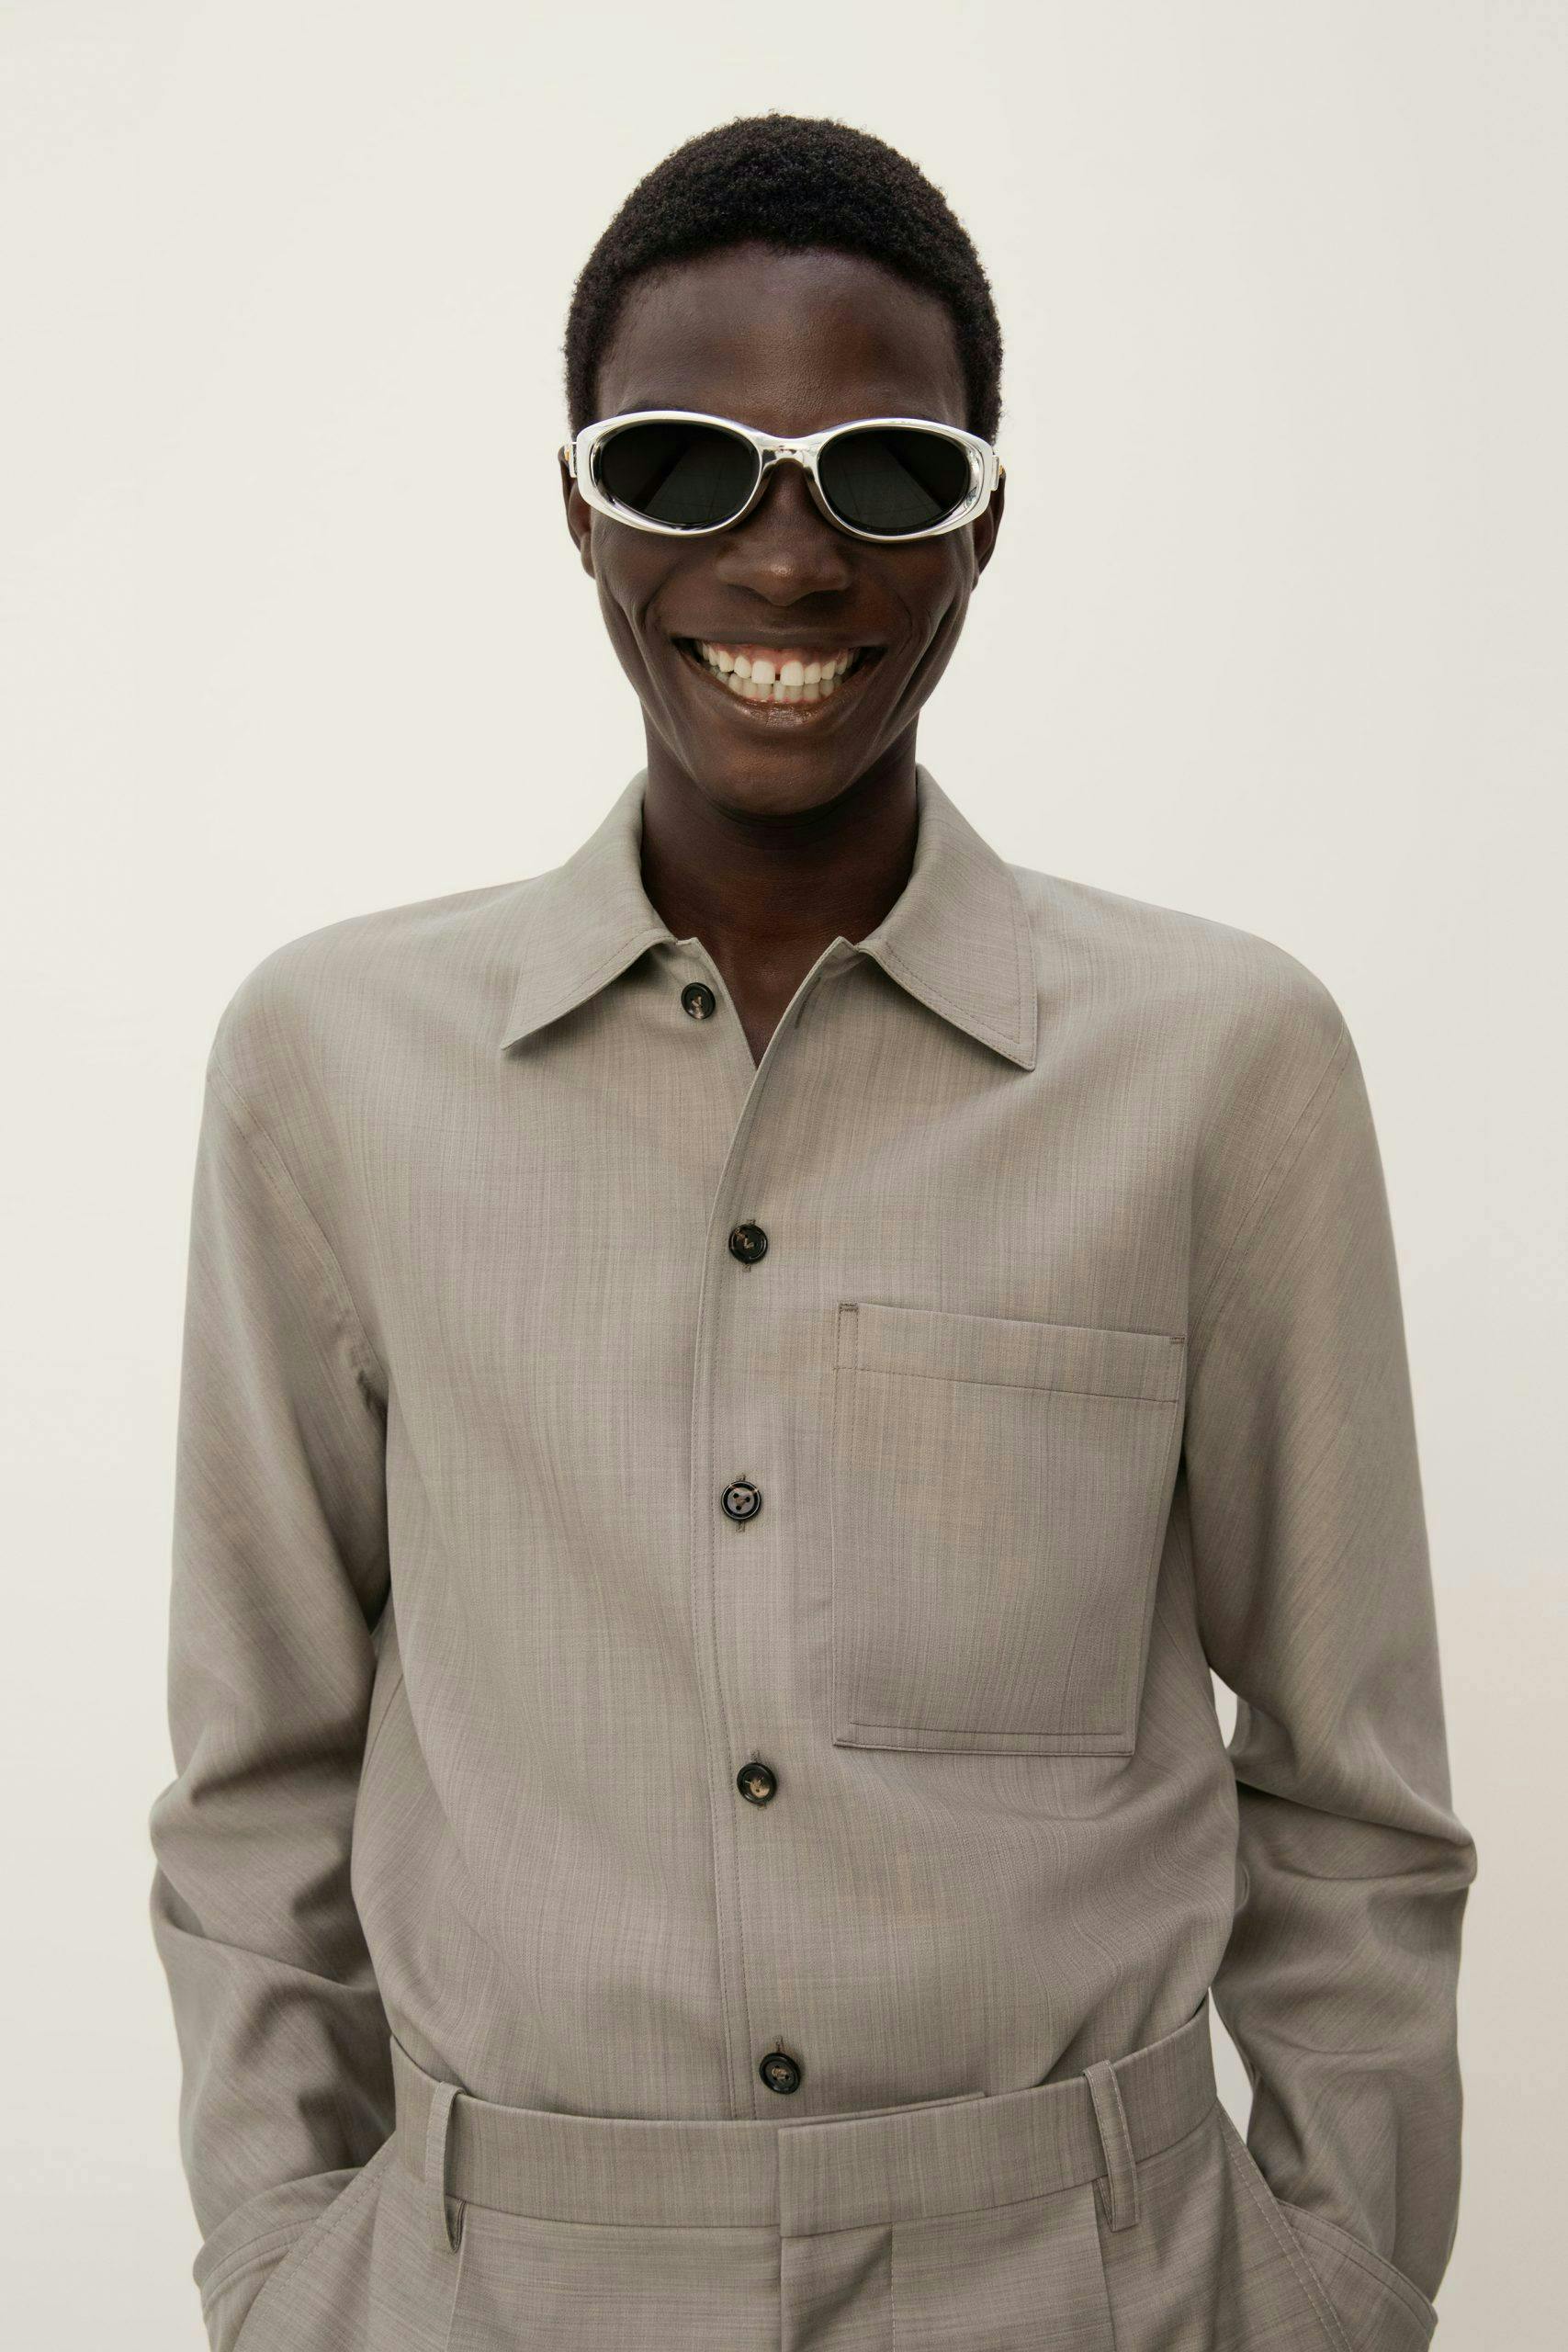 shirt face head person smile sunglasses coat suit adult man